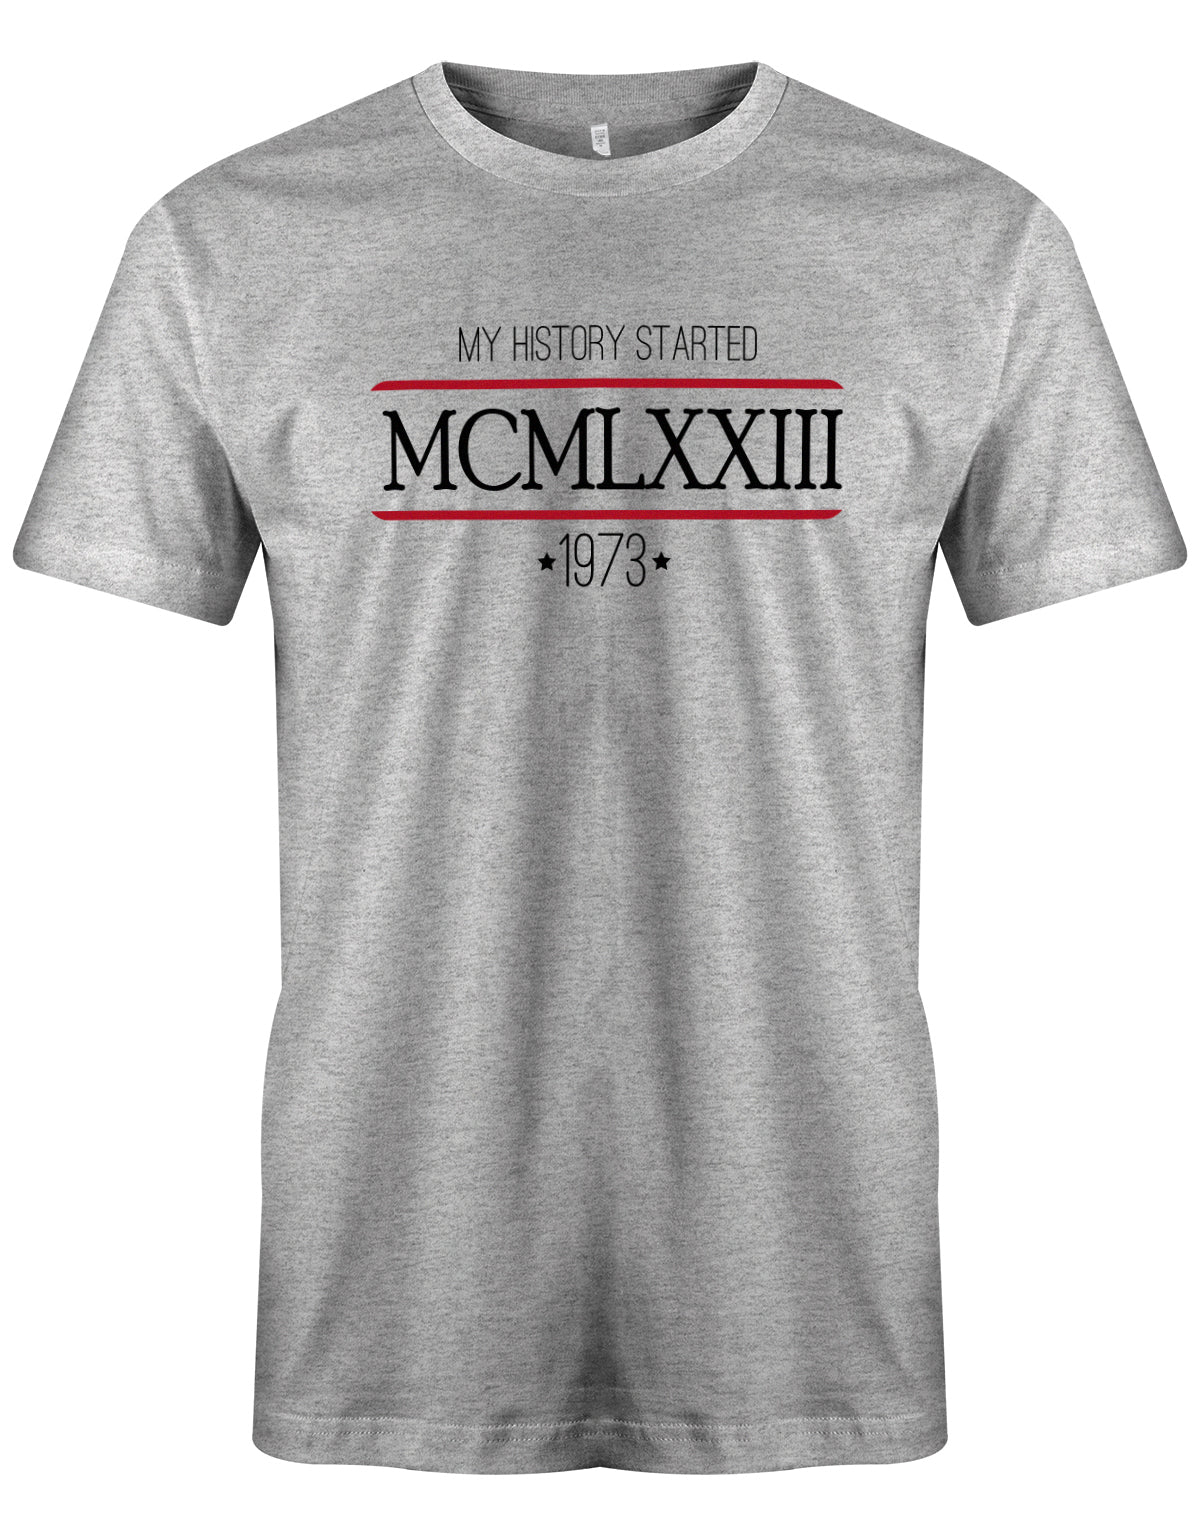 my history started 1973 - MCMLXXIII römische Zahlen - Jahrgang 1973 Geschenk Männer Shirt